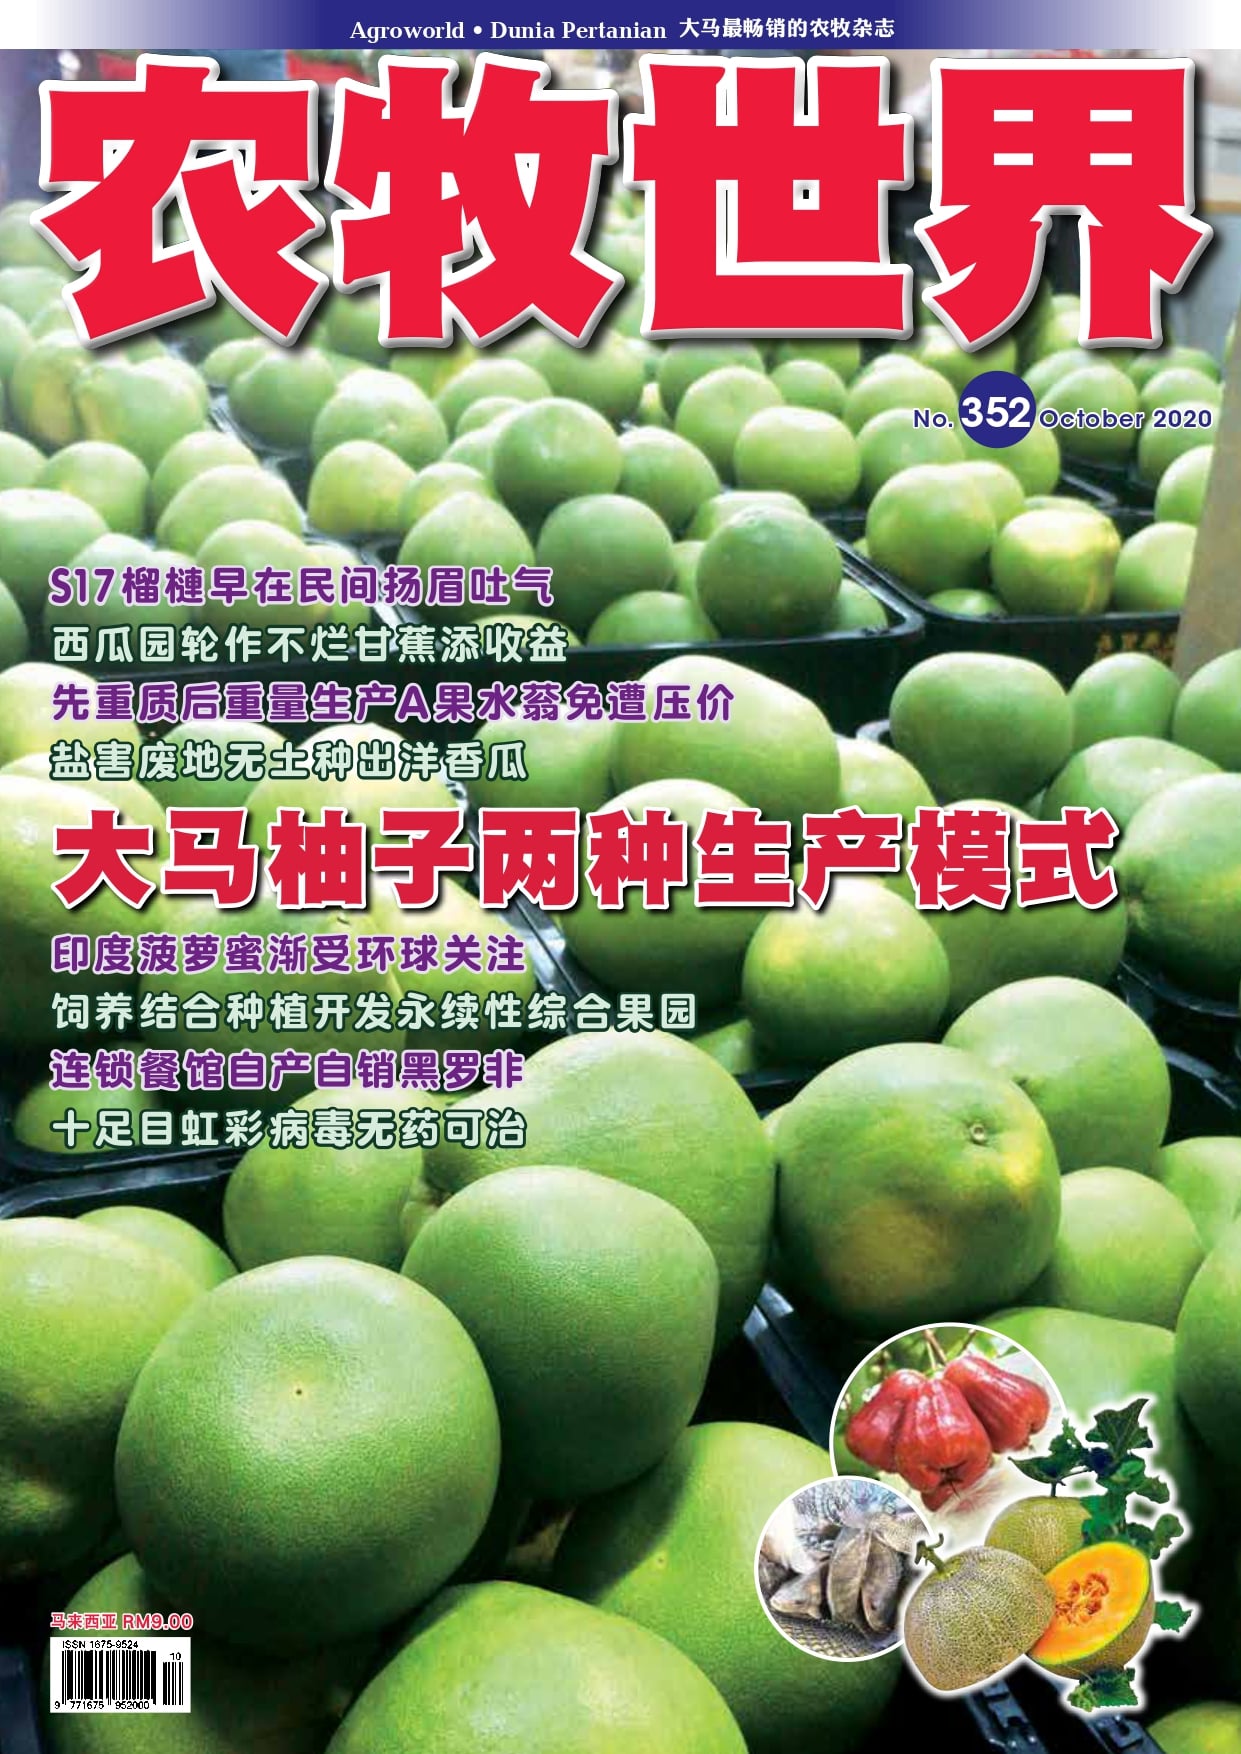 马来西亚柚子果 - 农牧世界